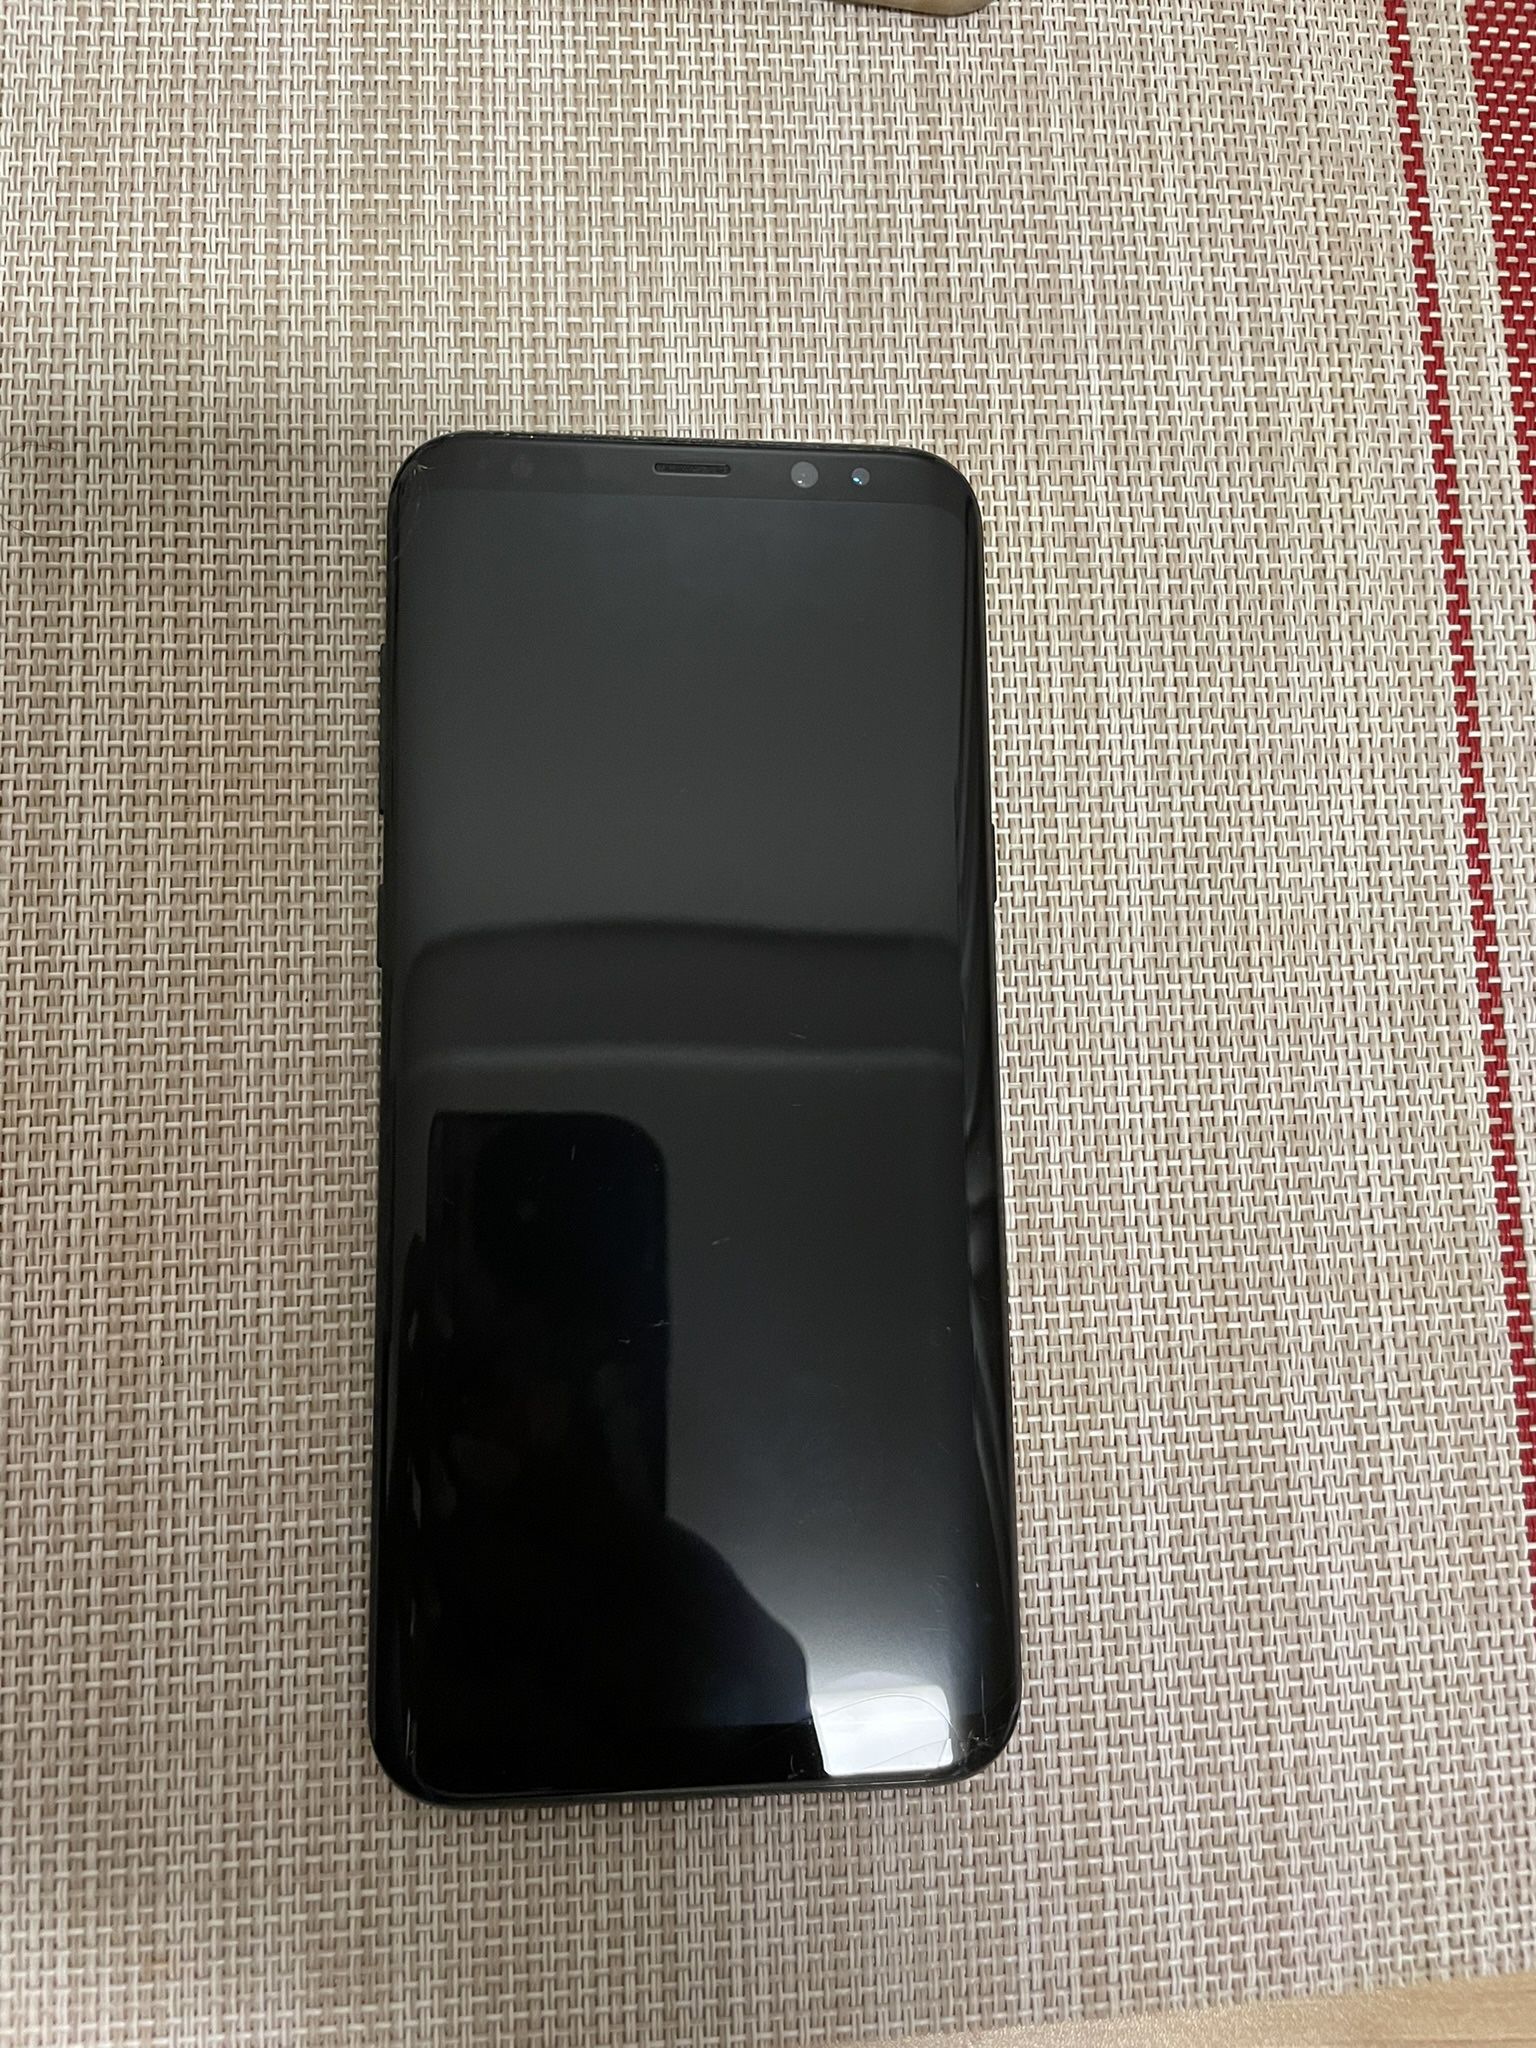 Samsung Galaxy S8+ (Black, 64GB) UNLOCKED